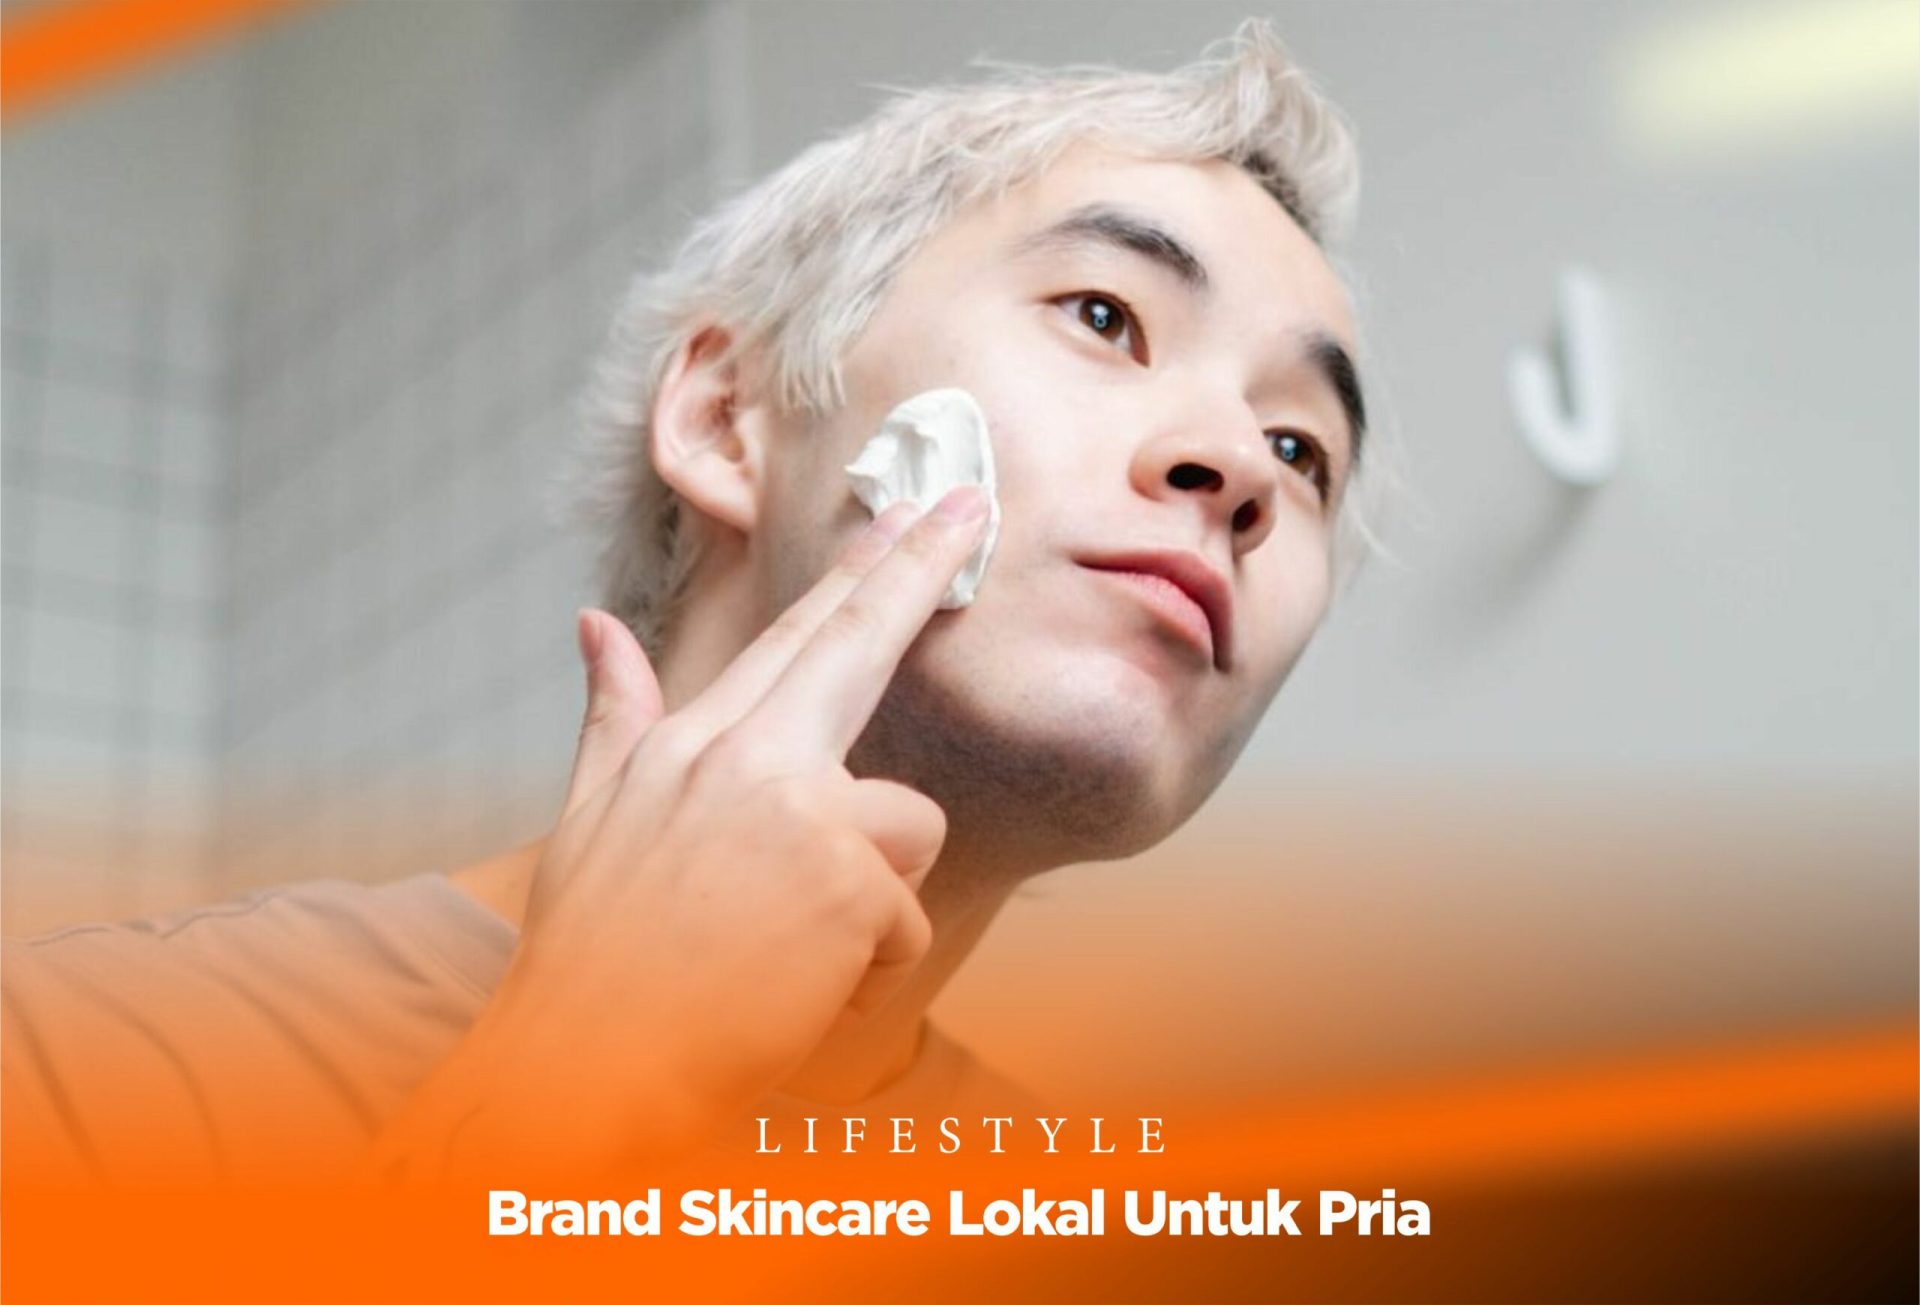 Brand Skincare Lokal Untuk Pria